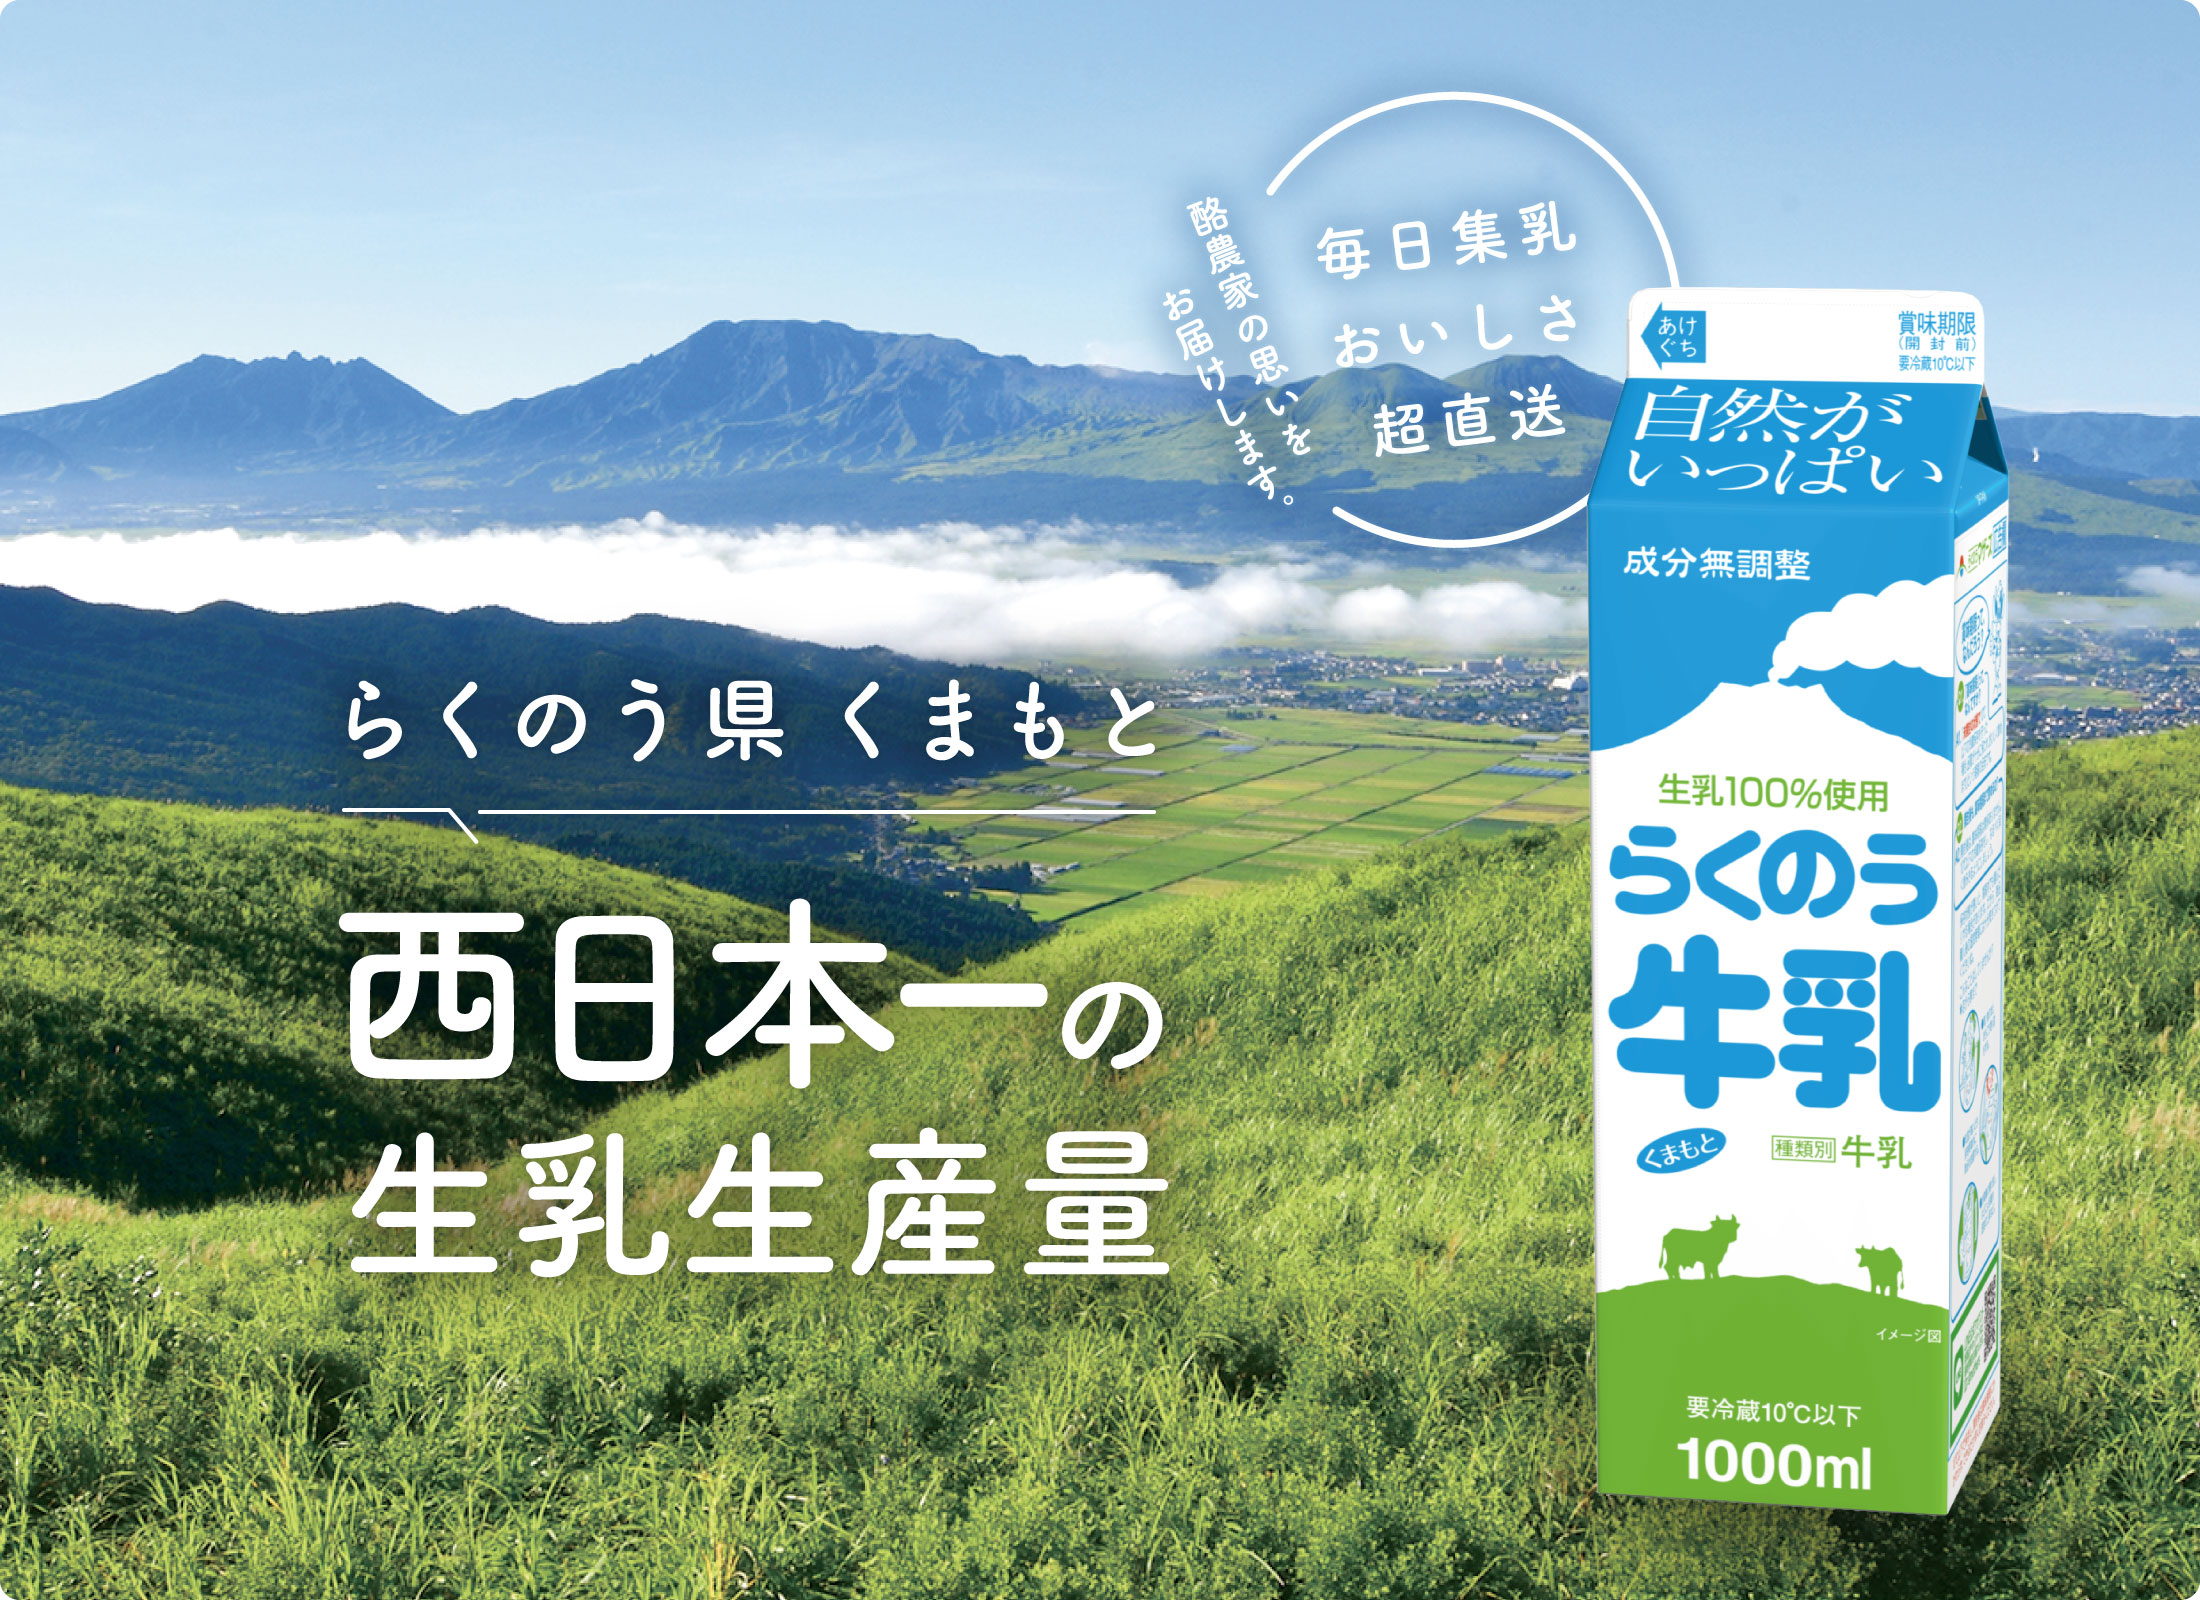 らくのう県くまもと 西日本一の生乳生産量